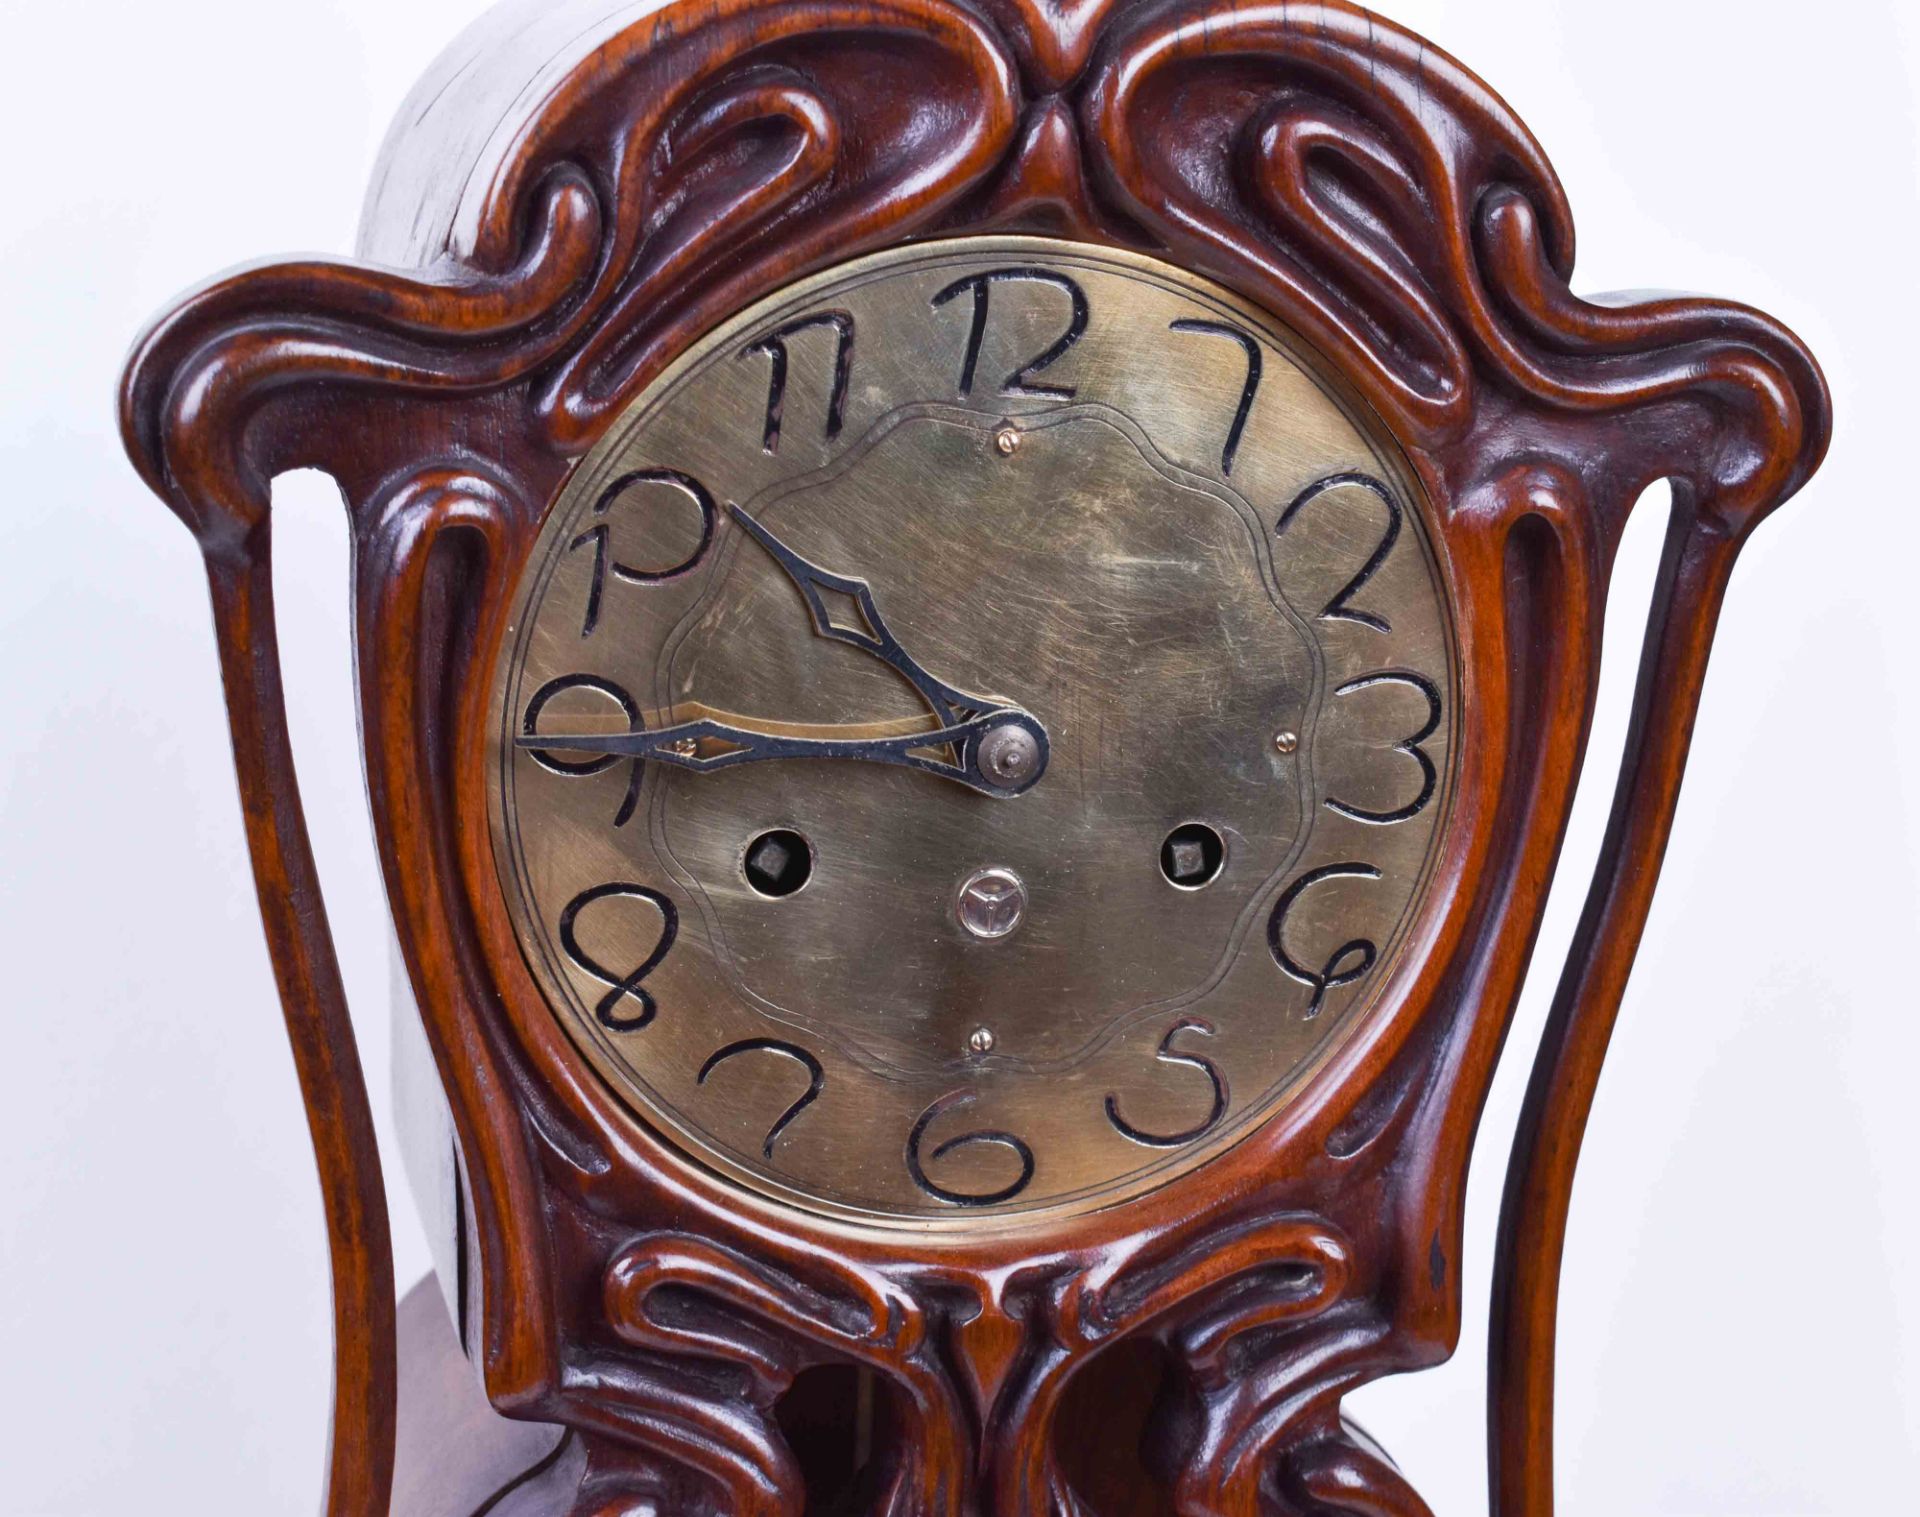 Jugendstil-Uhr um 1900 - Image 2 of 6